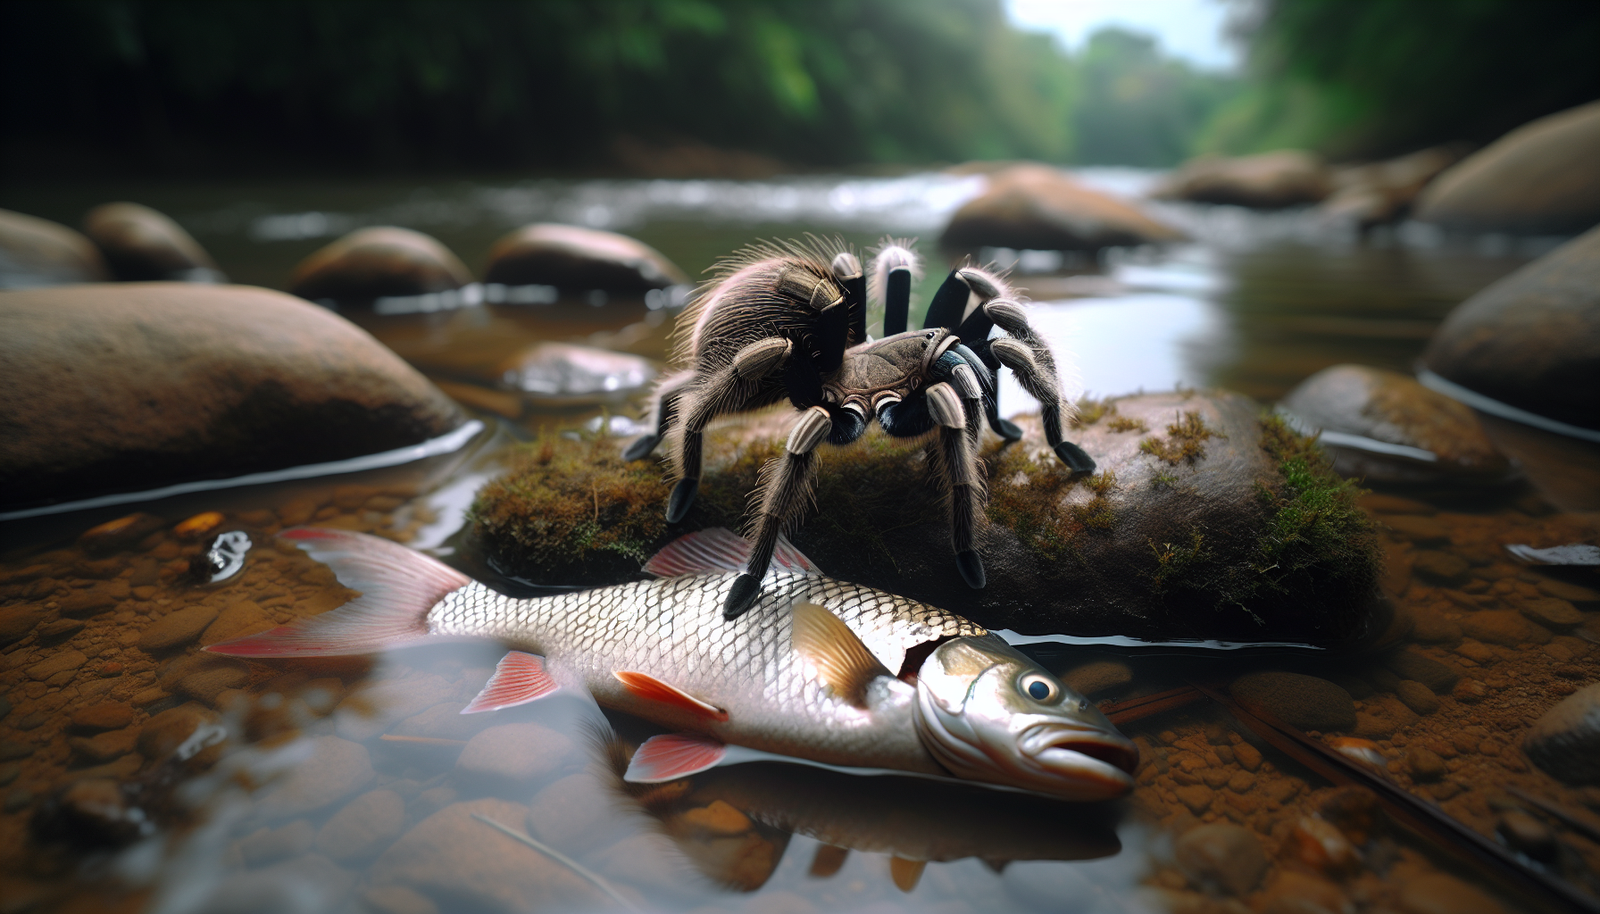 Can Tarantulas Be At Risk From Predatory Fish In Certain Habitats?